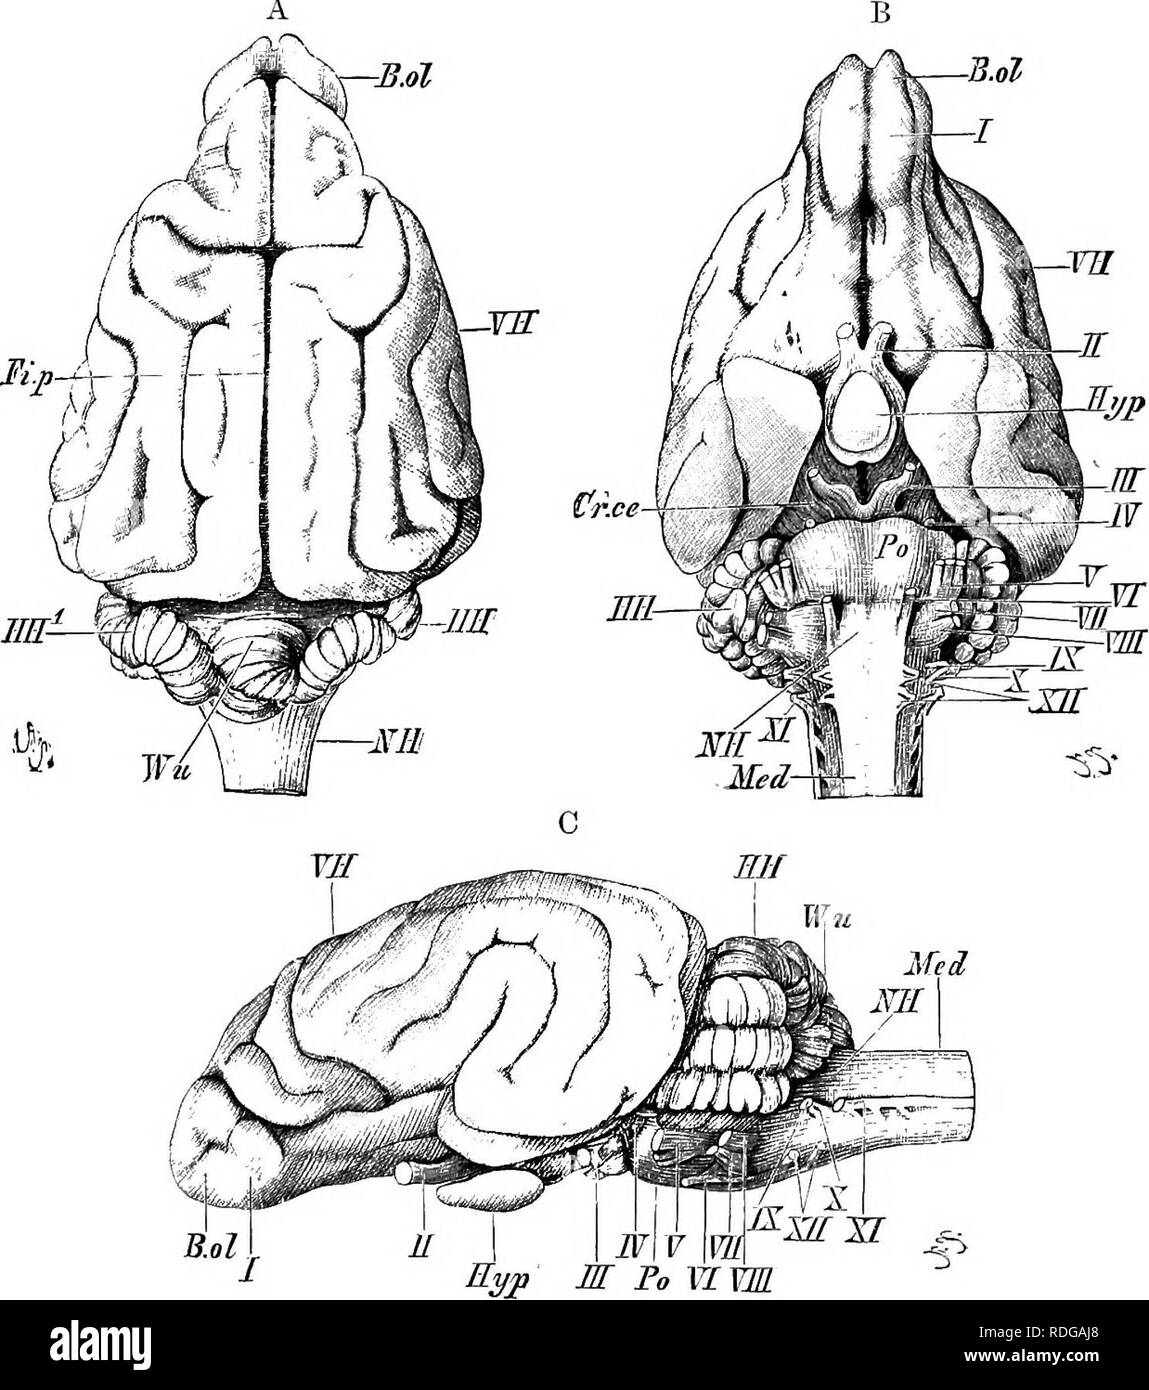 . Elemente der vergleichenden Anatomie der Wirbeltiere. Anatomie, Vergleichende. Das Gehirn 175&gt; SD-thab Eine anterior, posterior, und eine untere Cornu können Dis-iipguished in jedem sein; die minderwertigen Cornu erstreckt sich in Was entspricht • io die Hippokampale lobe von Reptilien (s. 168), und eine eminenz auf seinen Stock, bekannt als die Hüfte 2 Mcampus 7 Najor, ist viel stärker ausgeprägt als in niedrigeren Formen. Die olfaktorischen Lappen, in denen einer Olfaktorischen. Abb. 144. - Bkain der Hund (Pointeb). (A, Dorsalen; B, ventral; und C, seitliche Ansicht.) VB, zerebralen Hemisphären; Mil, Optik, Lappen; JIH, Kleinhirn, Wu, Superior vermis; JIH'^, La Stockfoto